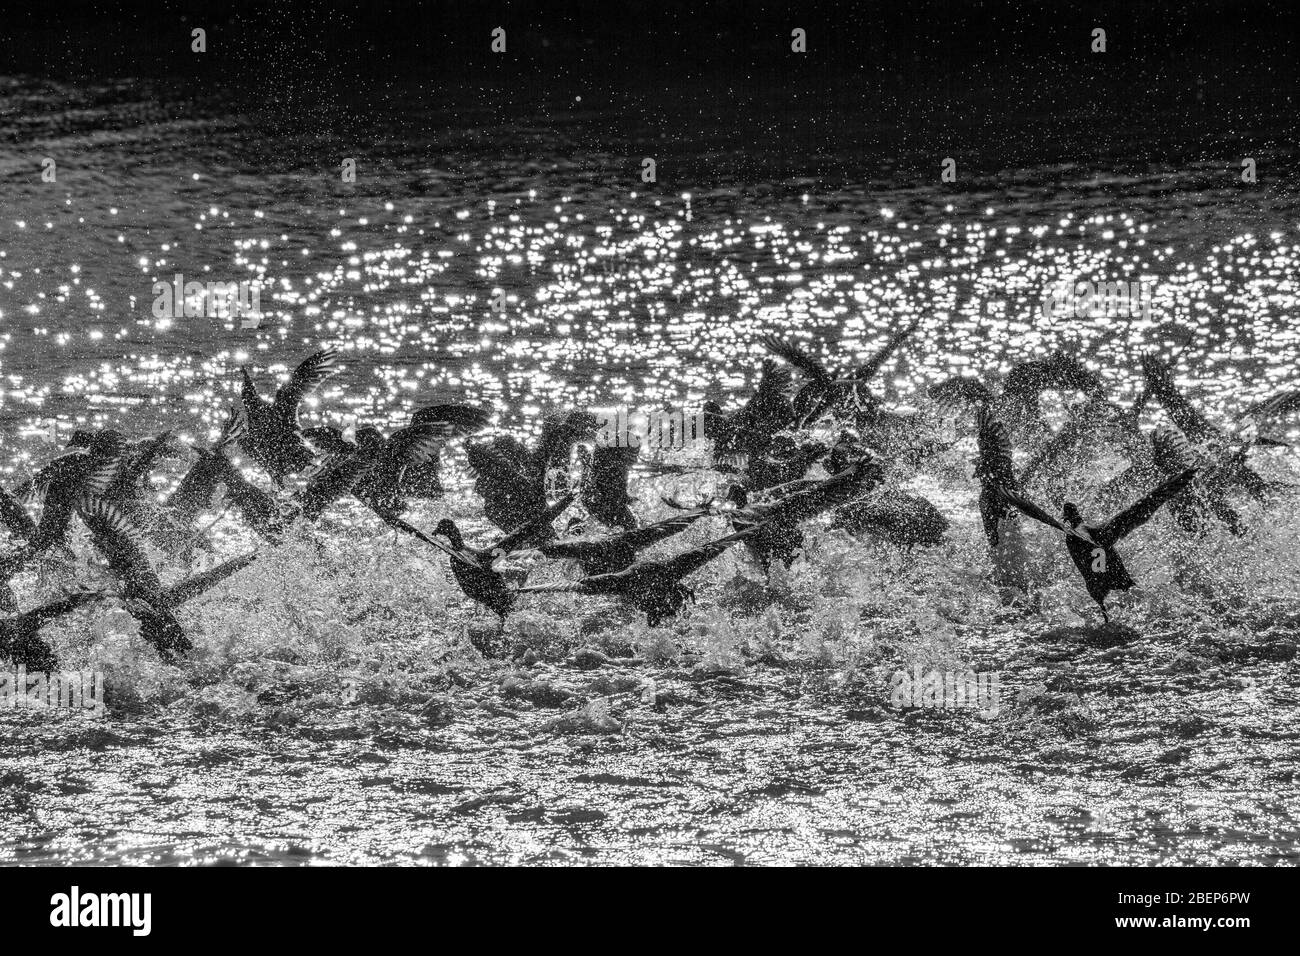 Überrascht Herde von Enten hebt in Wasser Spray, See Vistonida, Porto Lagos, Xanthi Region, Nordgriechenland. Erstaunliche Natur in Aktion, seichte selektive Fokus der Vogel Silhouetten, schwarz und weiß Stockfoto